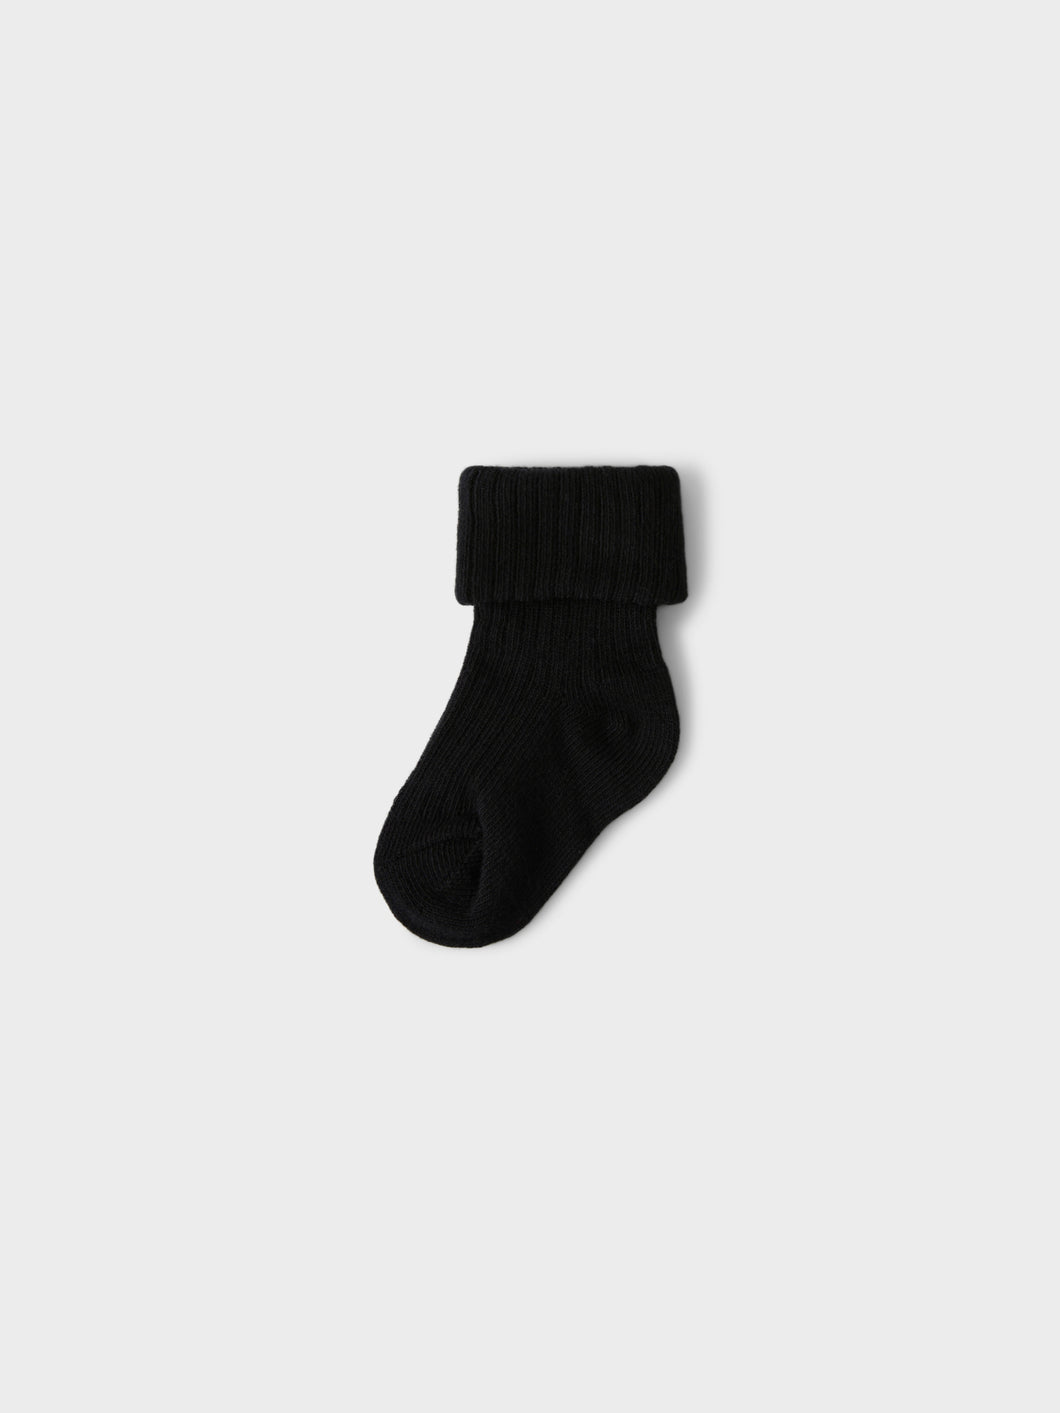 NBMNONASE Socks - Black